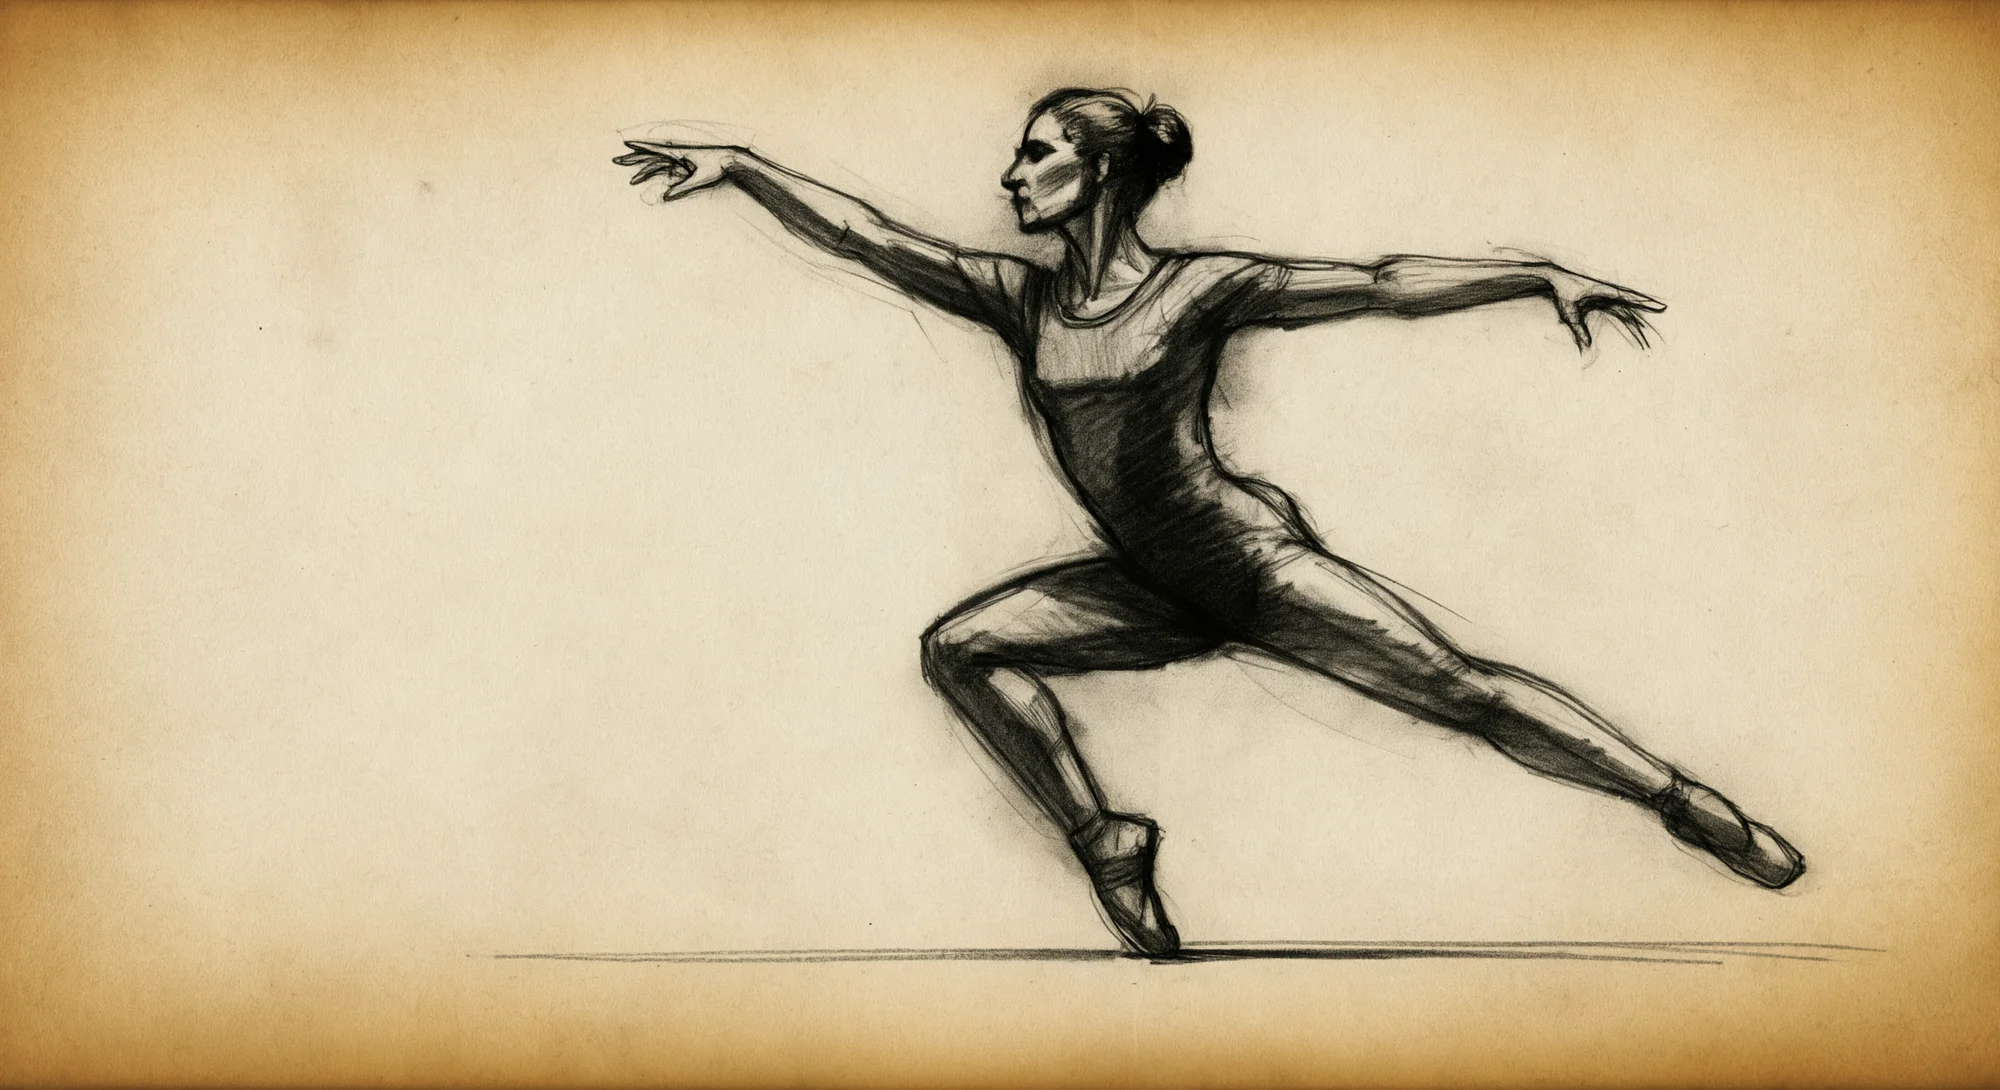 Un boceto al carboncillo de una bailarina capturándola en medio de un movimiento dinámico. El boceto está realizado sobre papel pergamino envejecido.